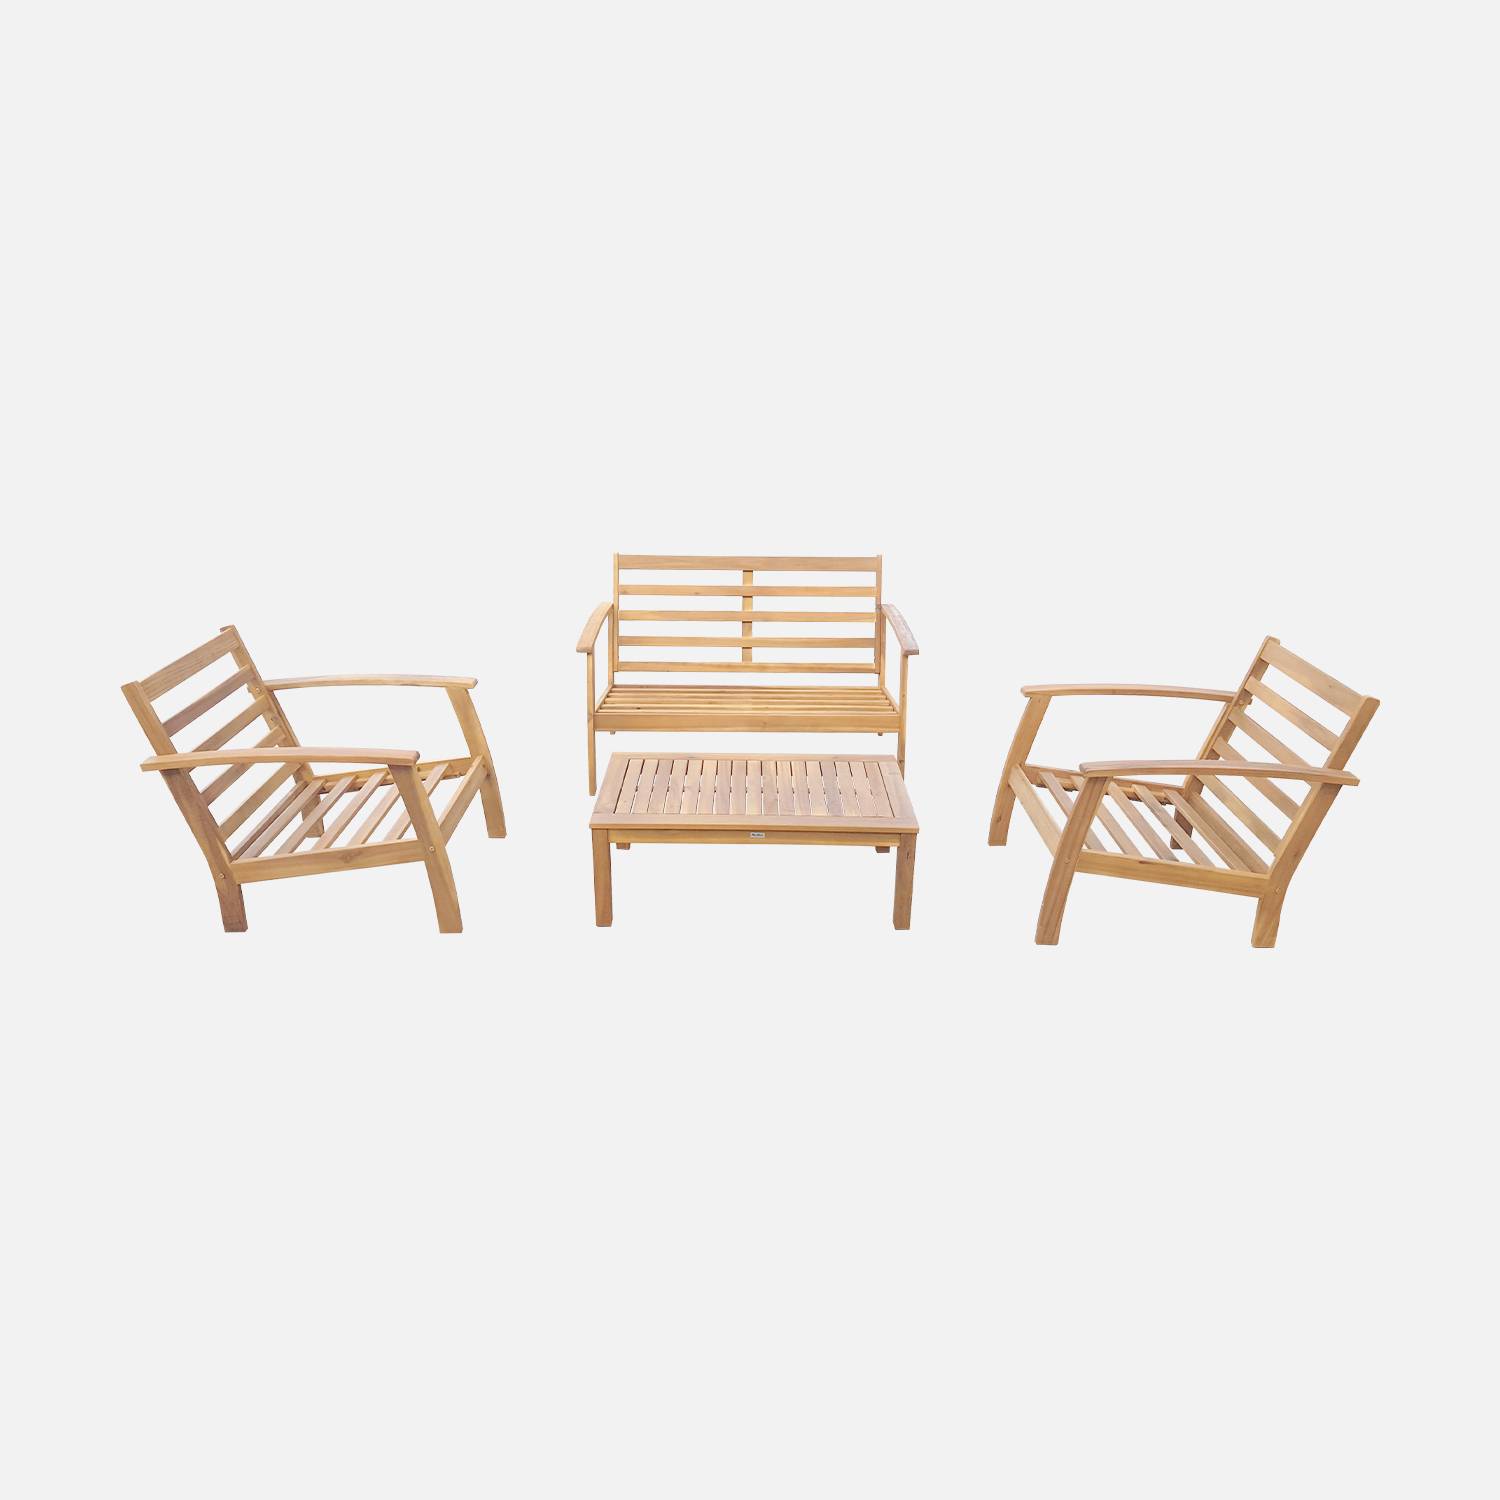 Salon de jardin en bois 4 places - Ushuaïa - Coussins gris, canapé, fauteuils et table basse en acacia, design Photo7